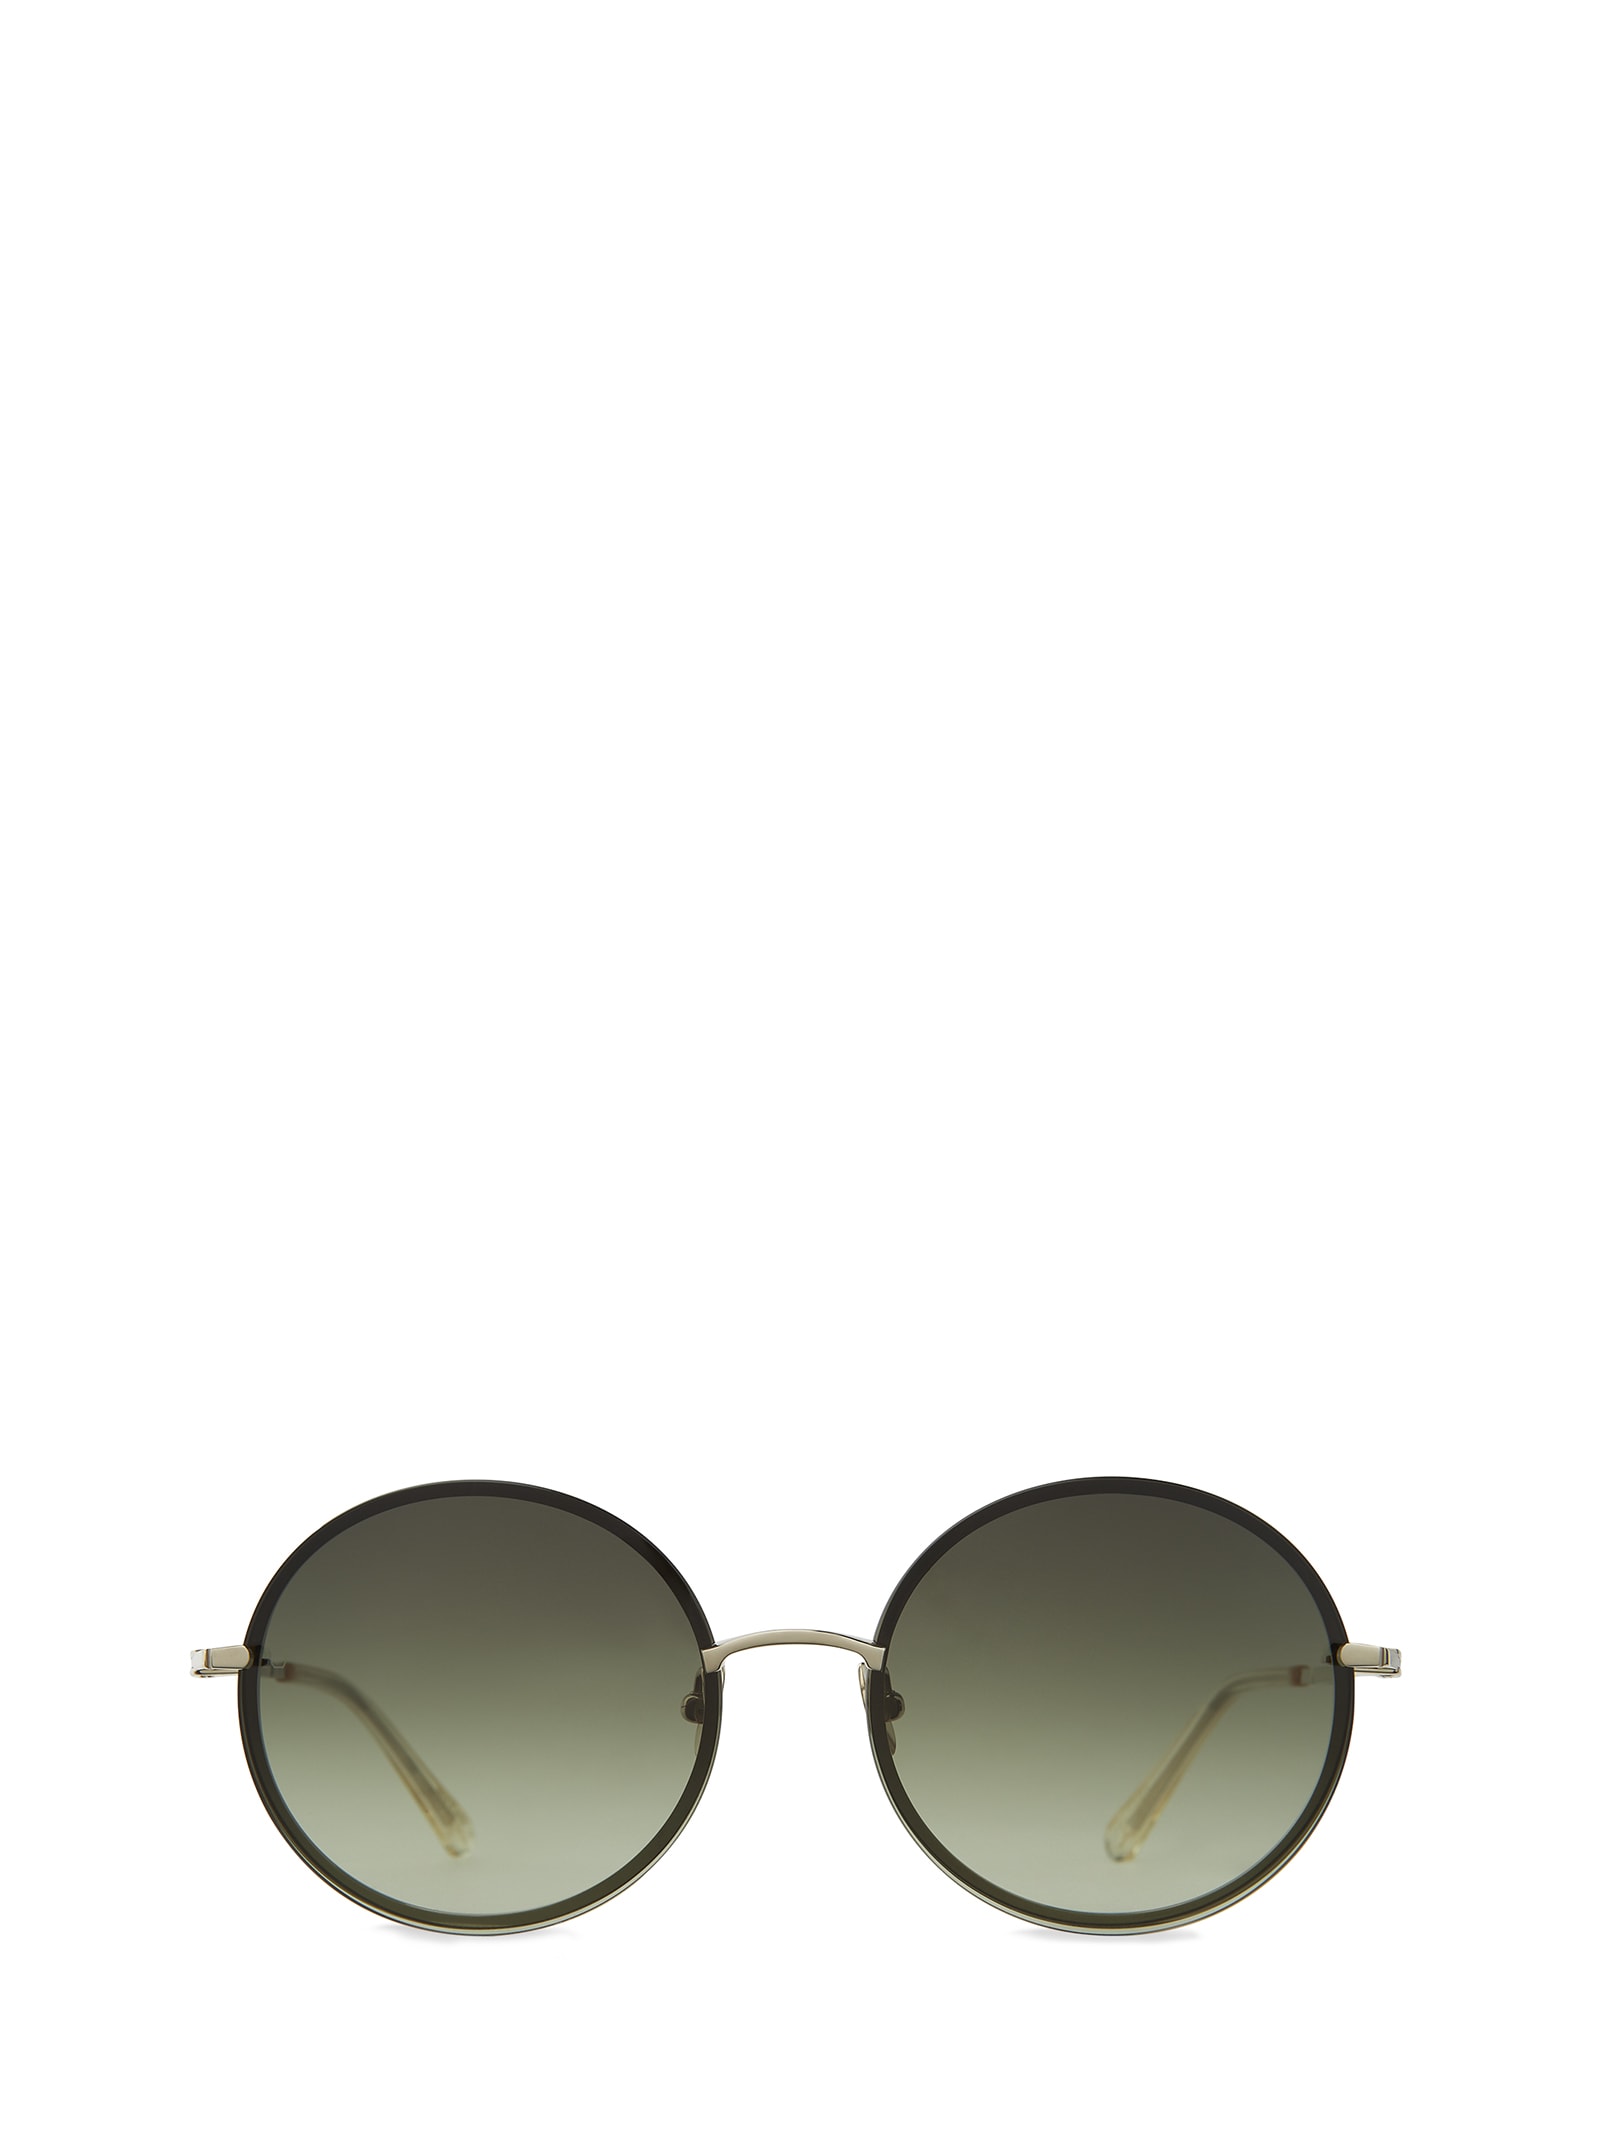 1967 Sl Artist Crystal Sunglasses